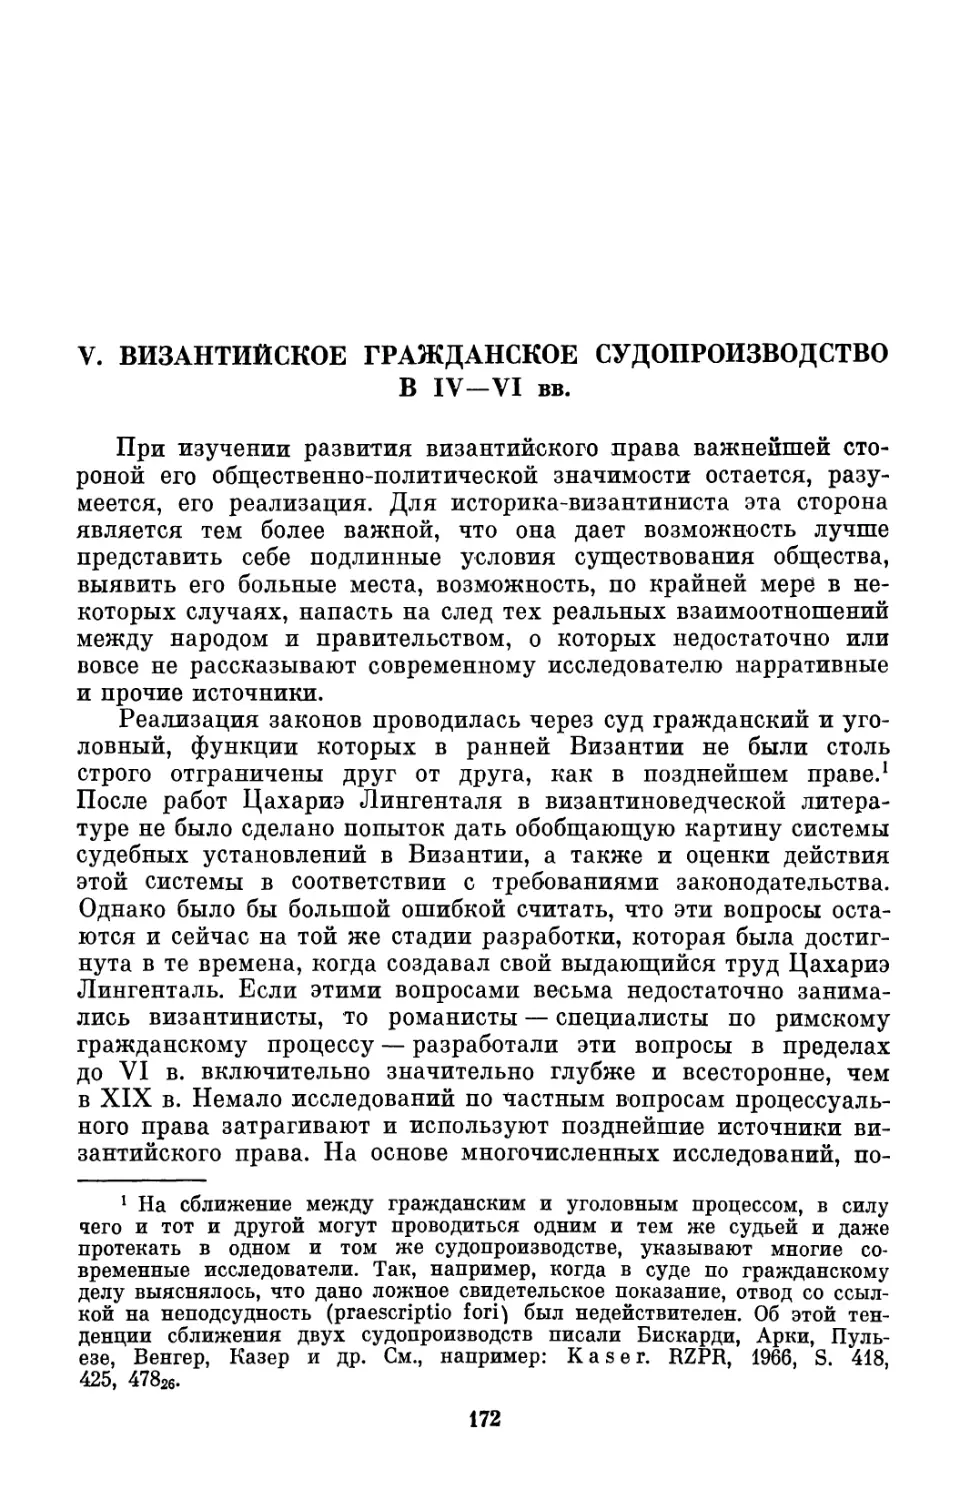 V. Византийское гражданское судопроизводство в IV—VI вв